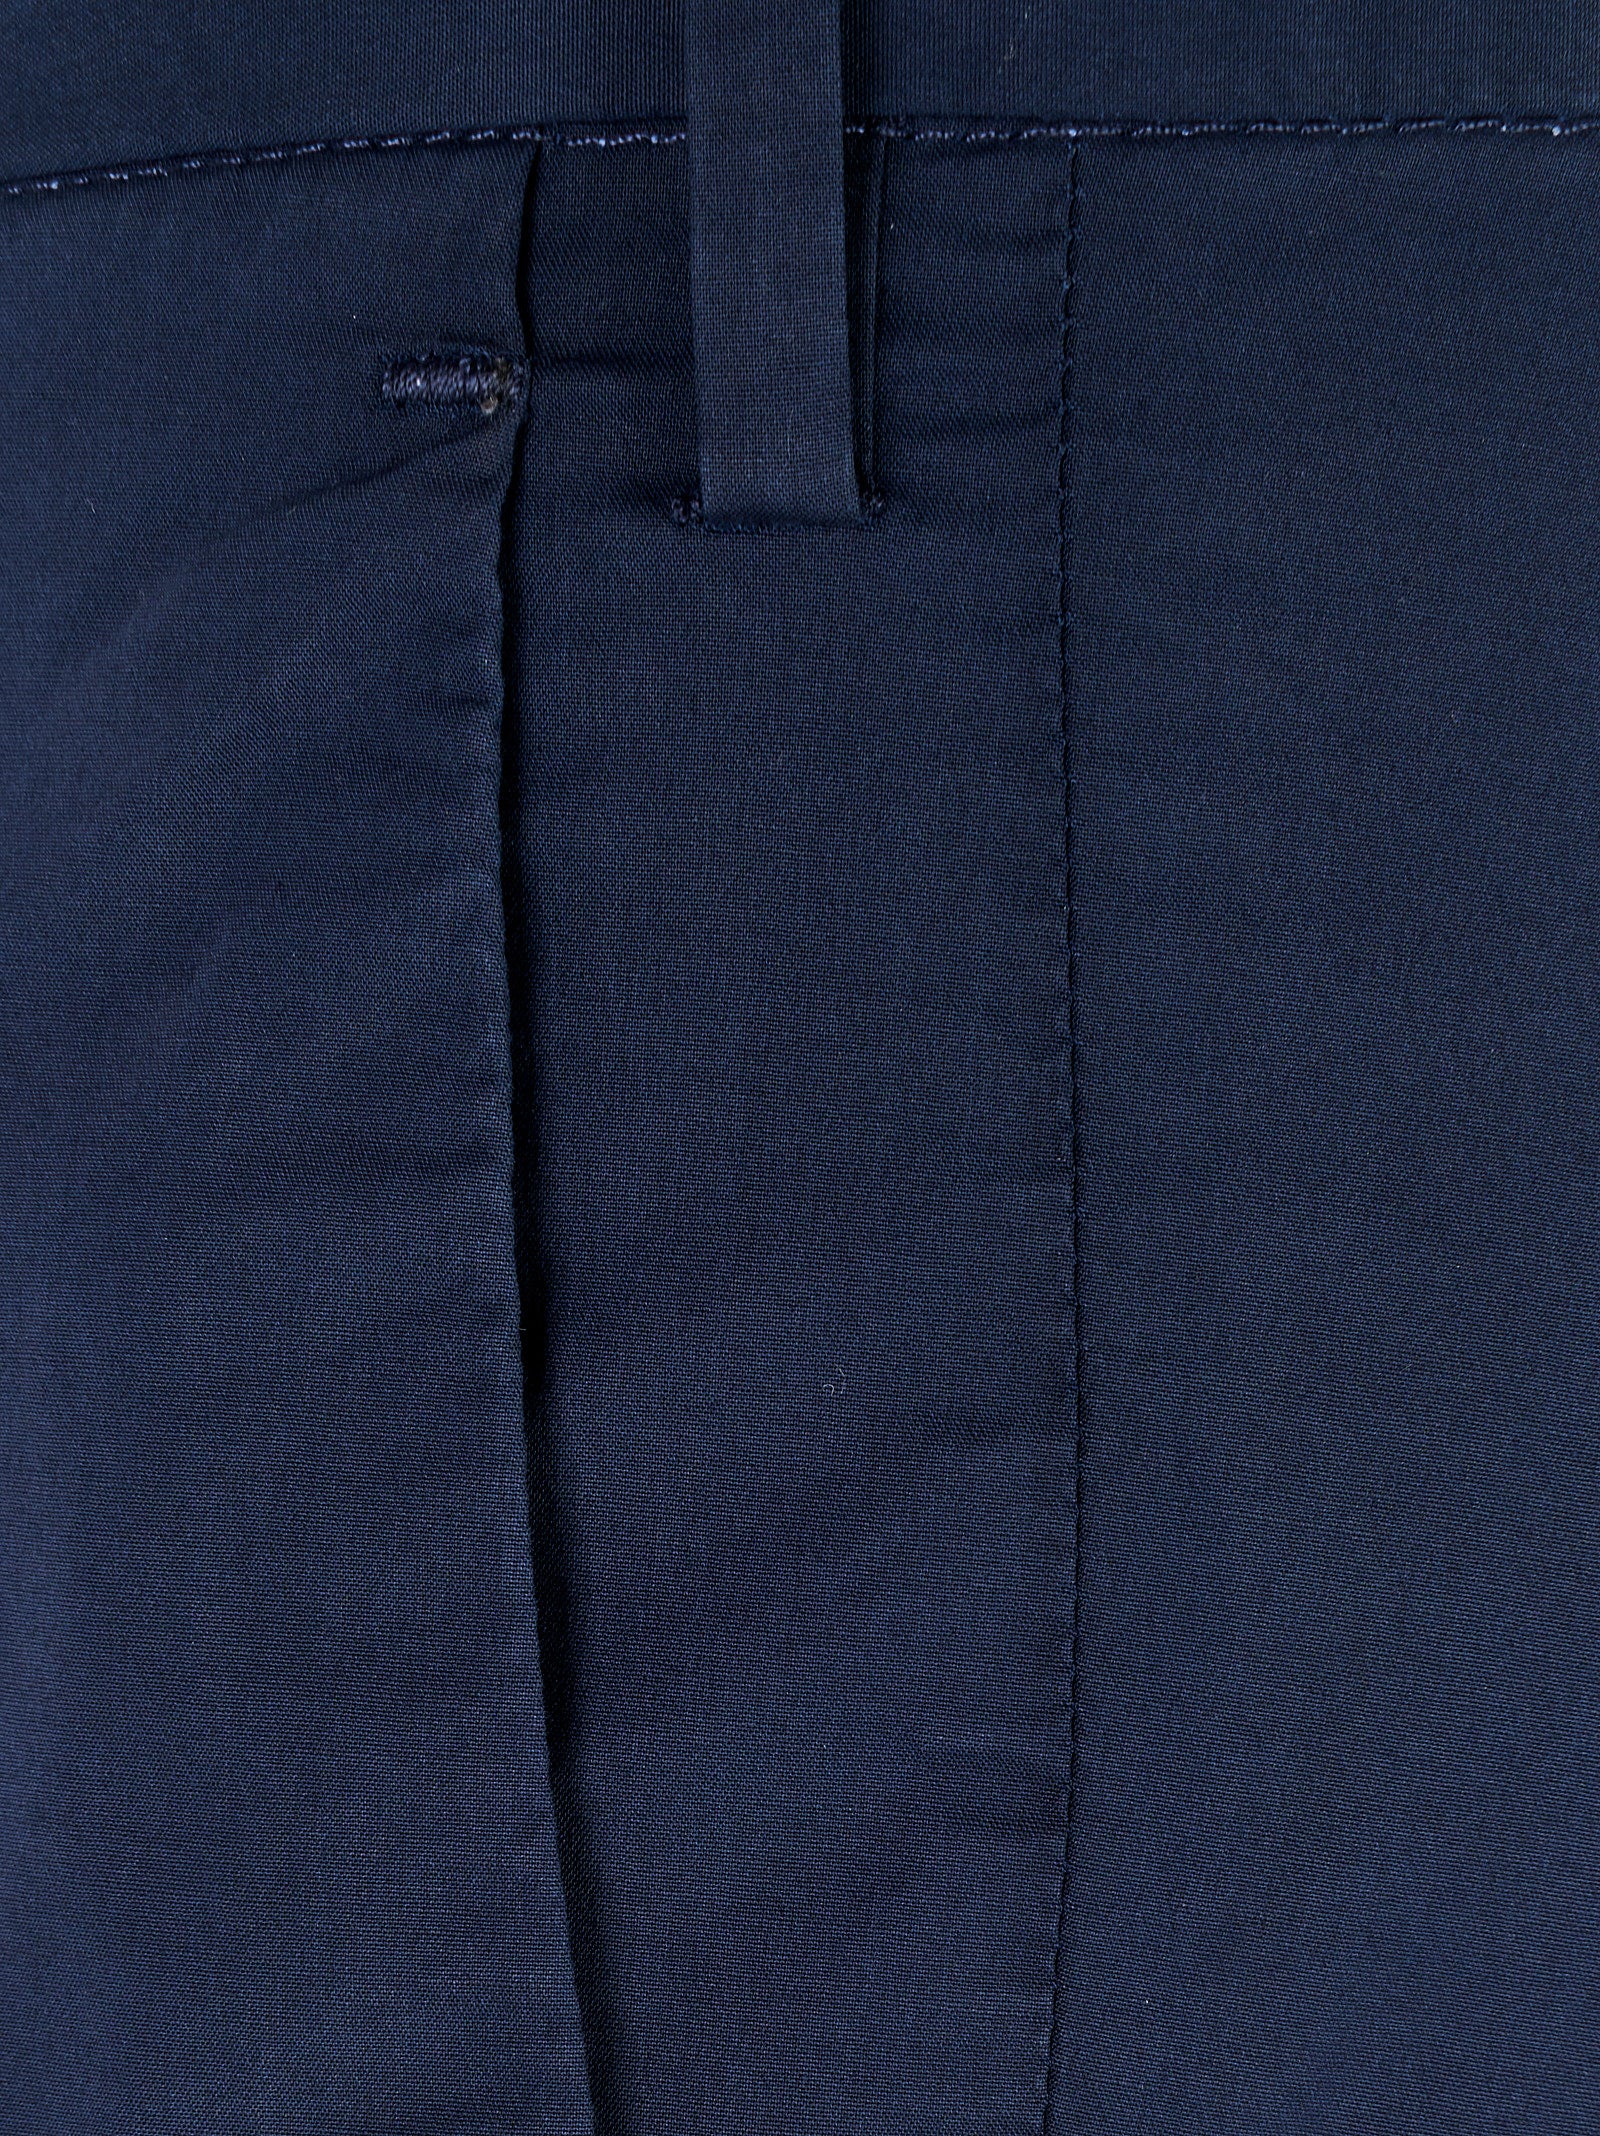 Pantalone INCOTEX
Blu